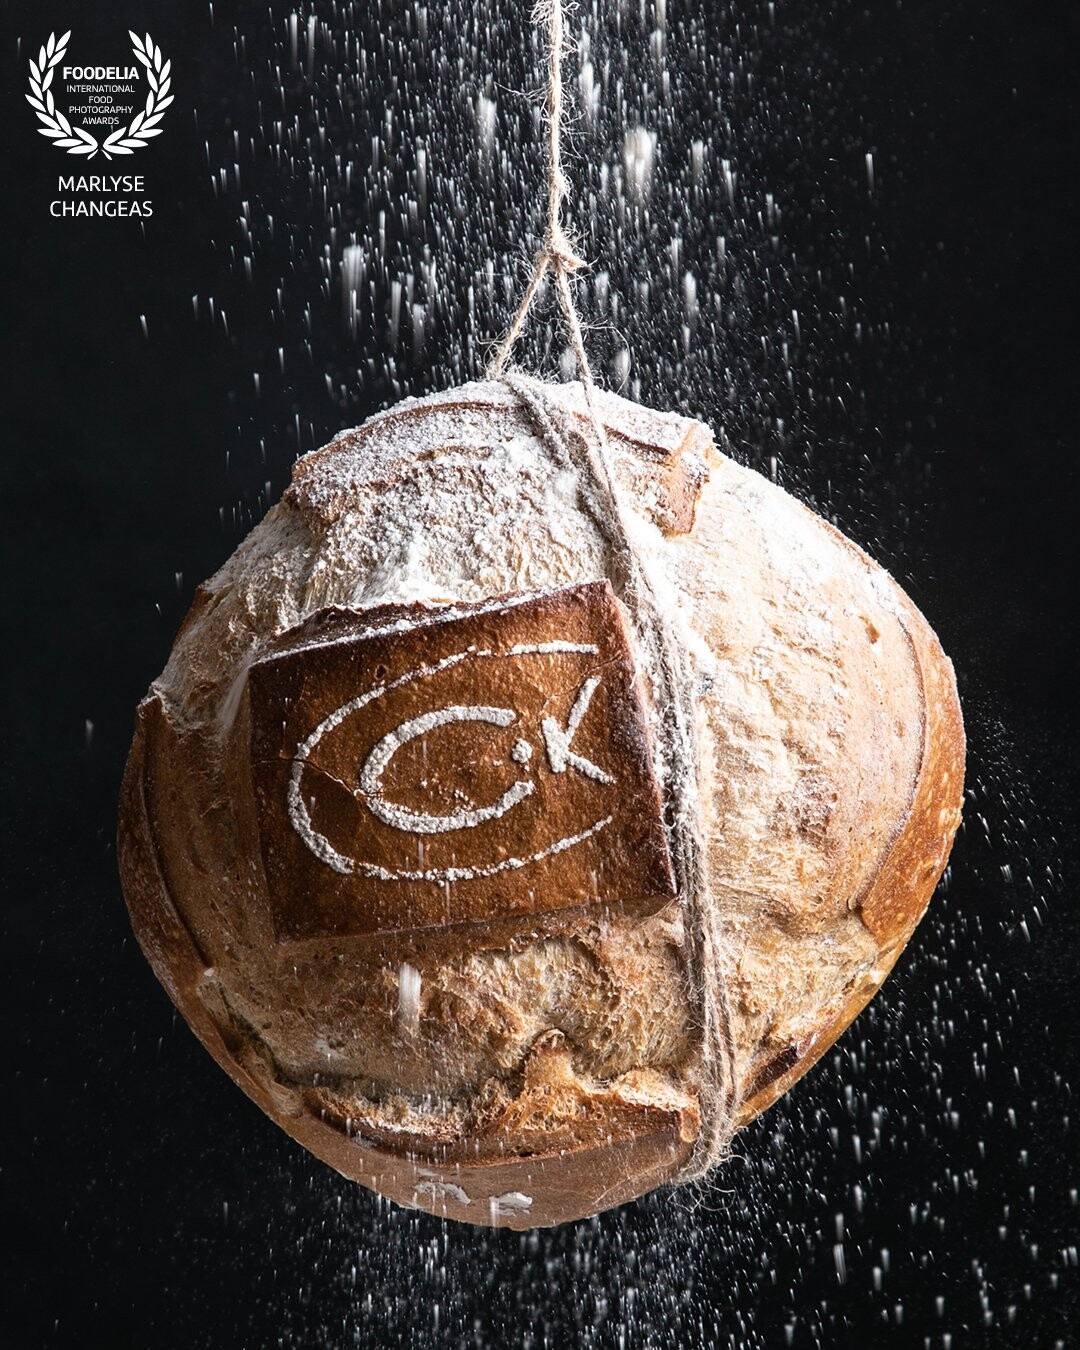 L’idée était de suspendre un pain au milieu d’un jet de farine pour apporter de la modernité à cette image. Une source de lumière latérale et un fond noir sont utilisés pour rendre le pain le sujet principal